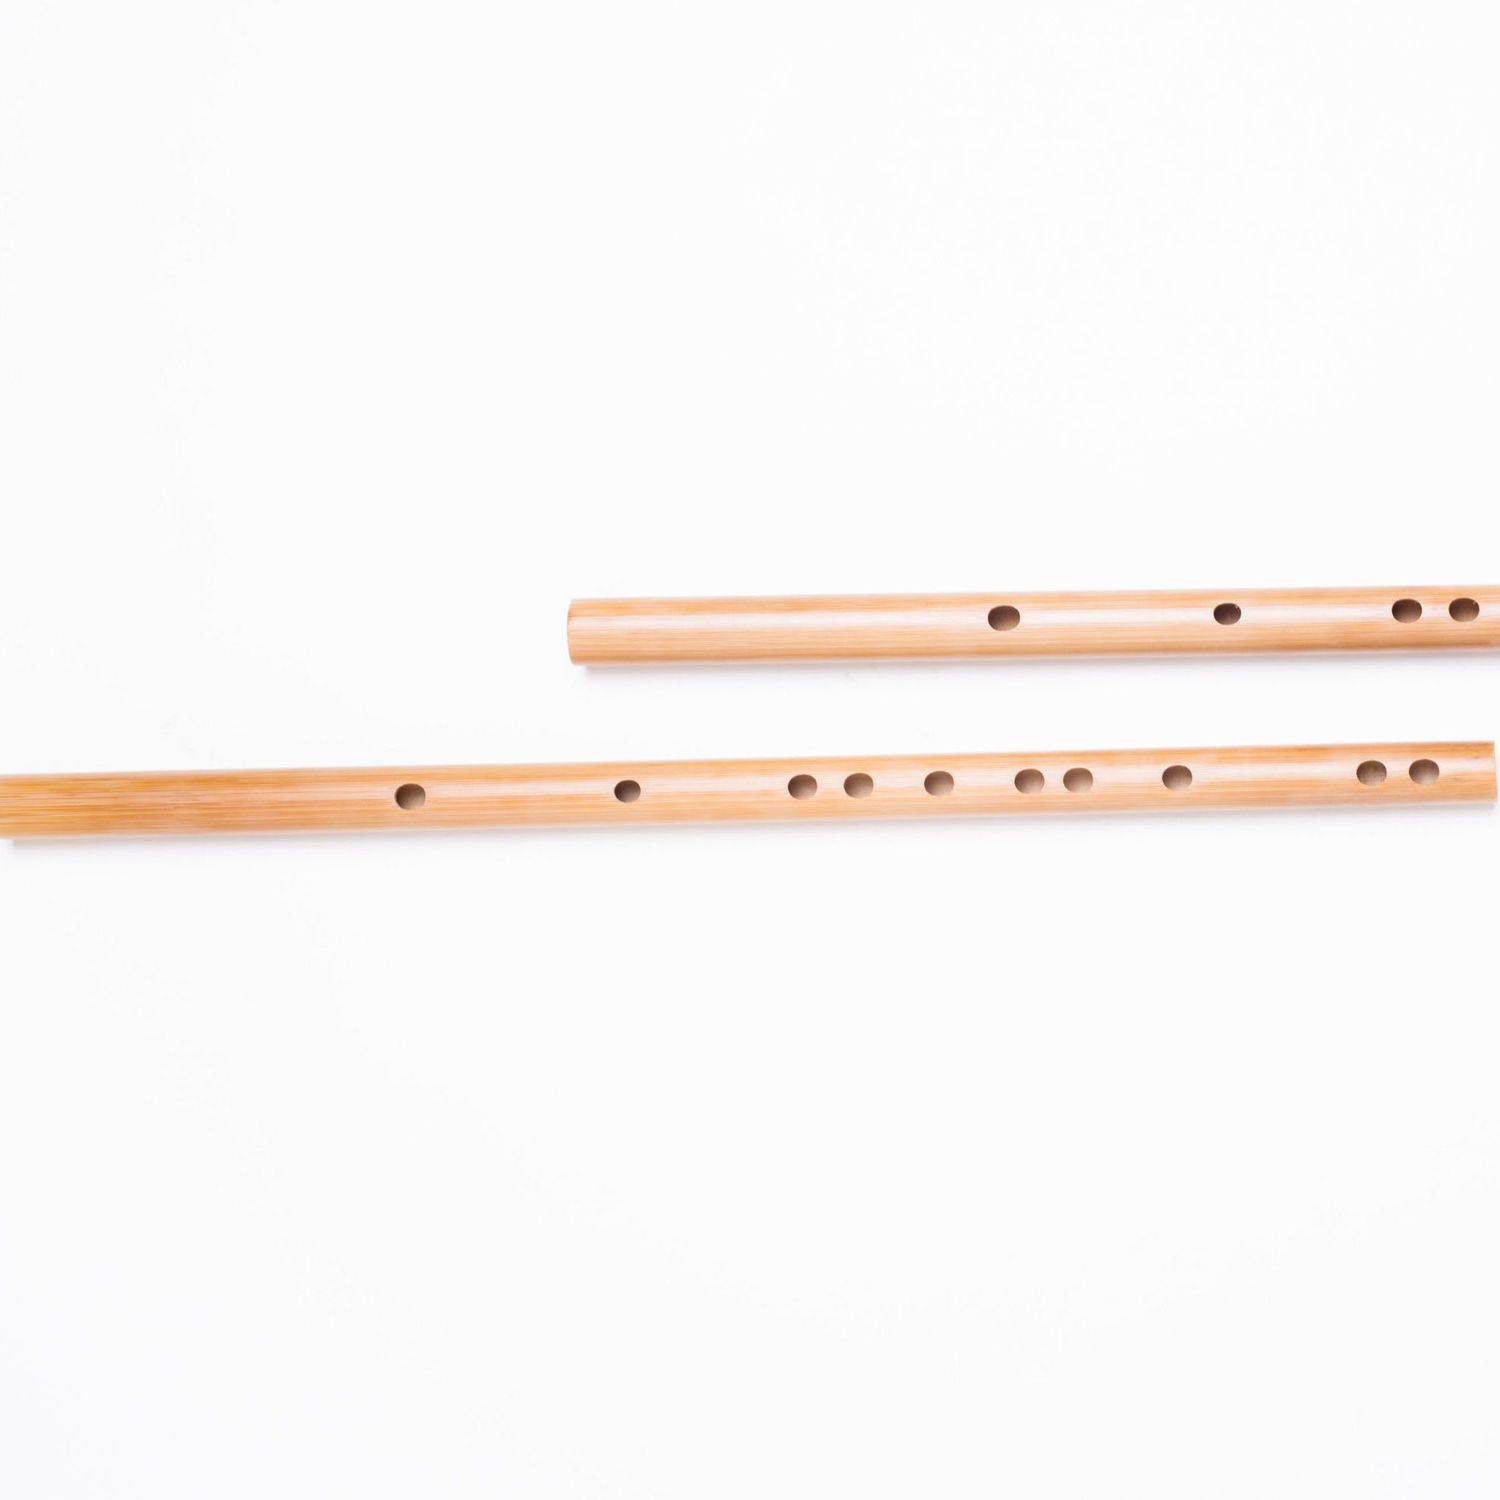 苦竹笛古风横笛学生笛竹笛精致初学成人演奏乐器笛学习入门竹笛子